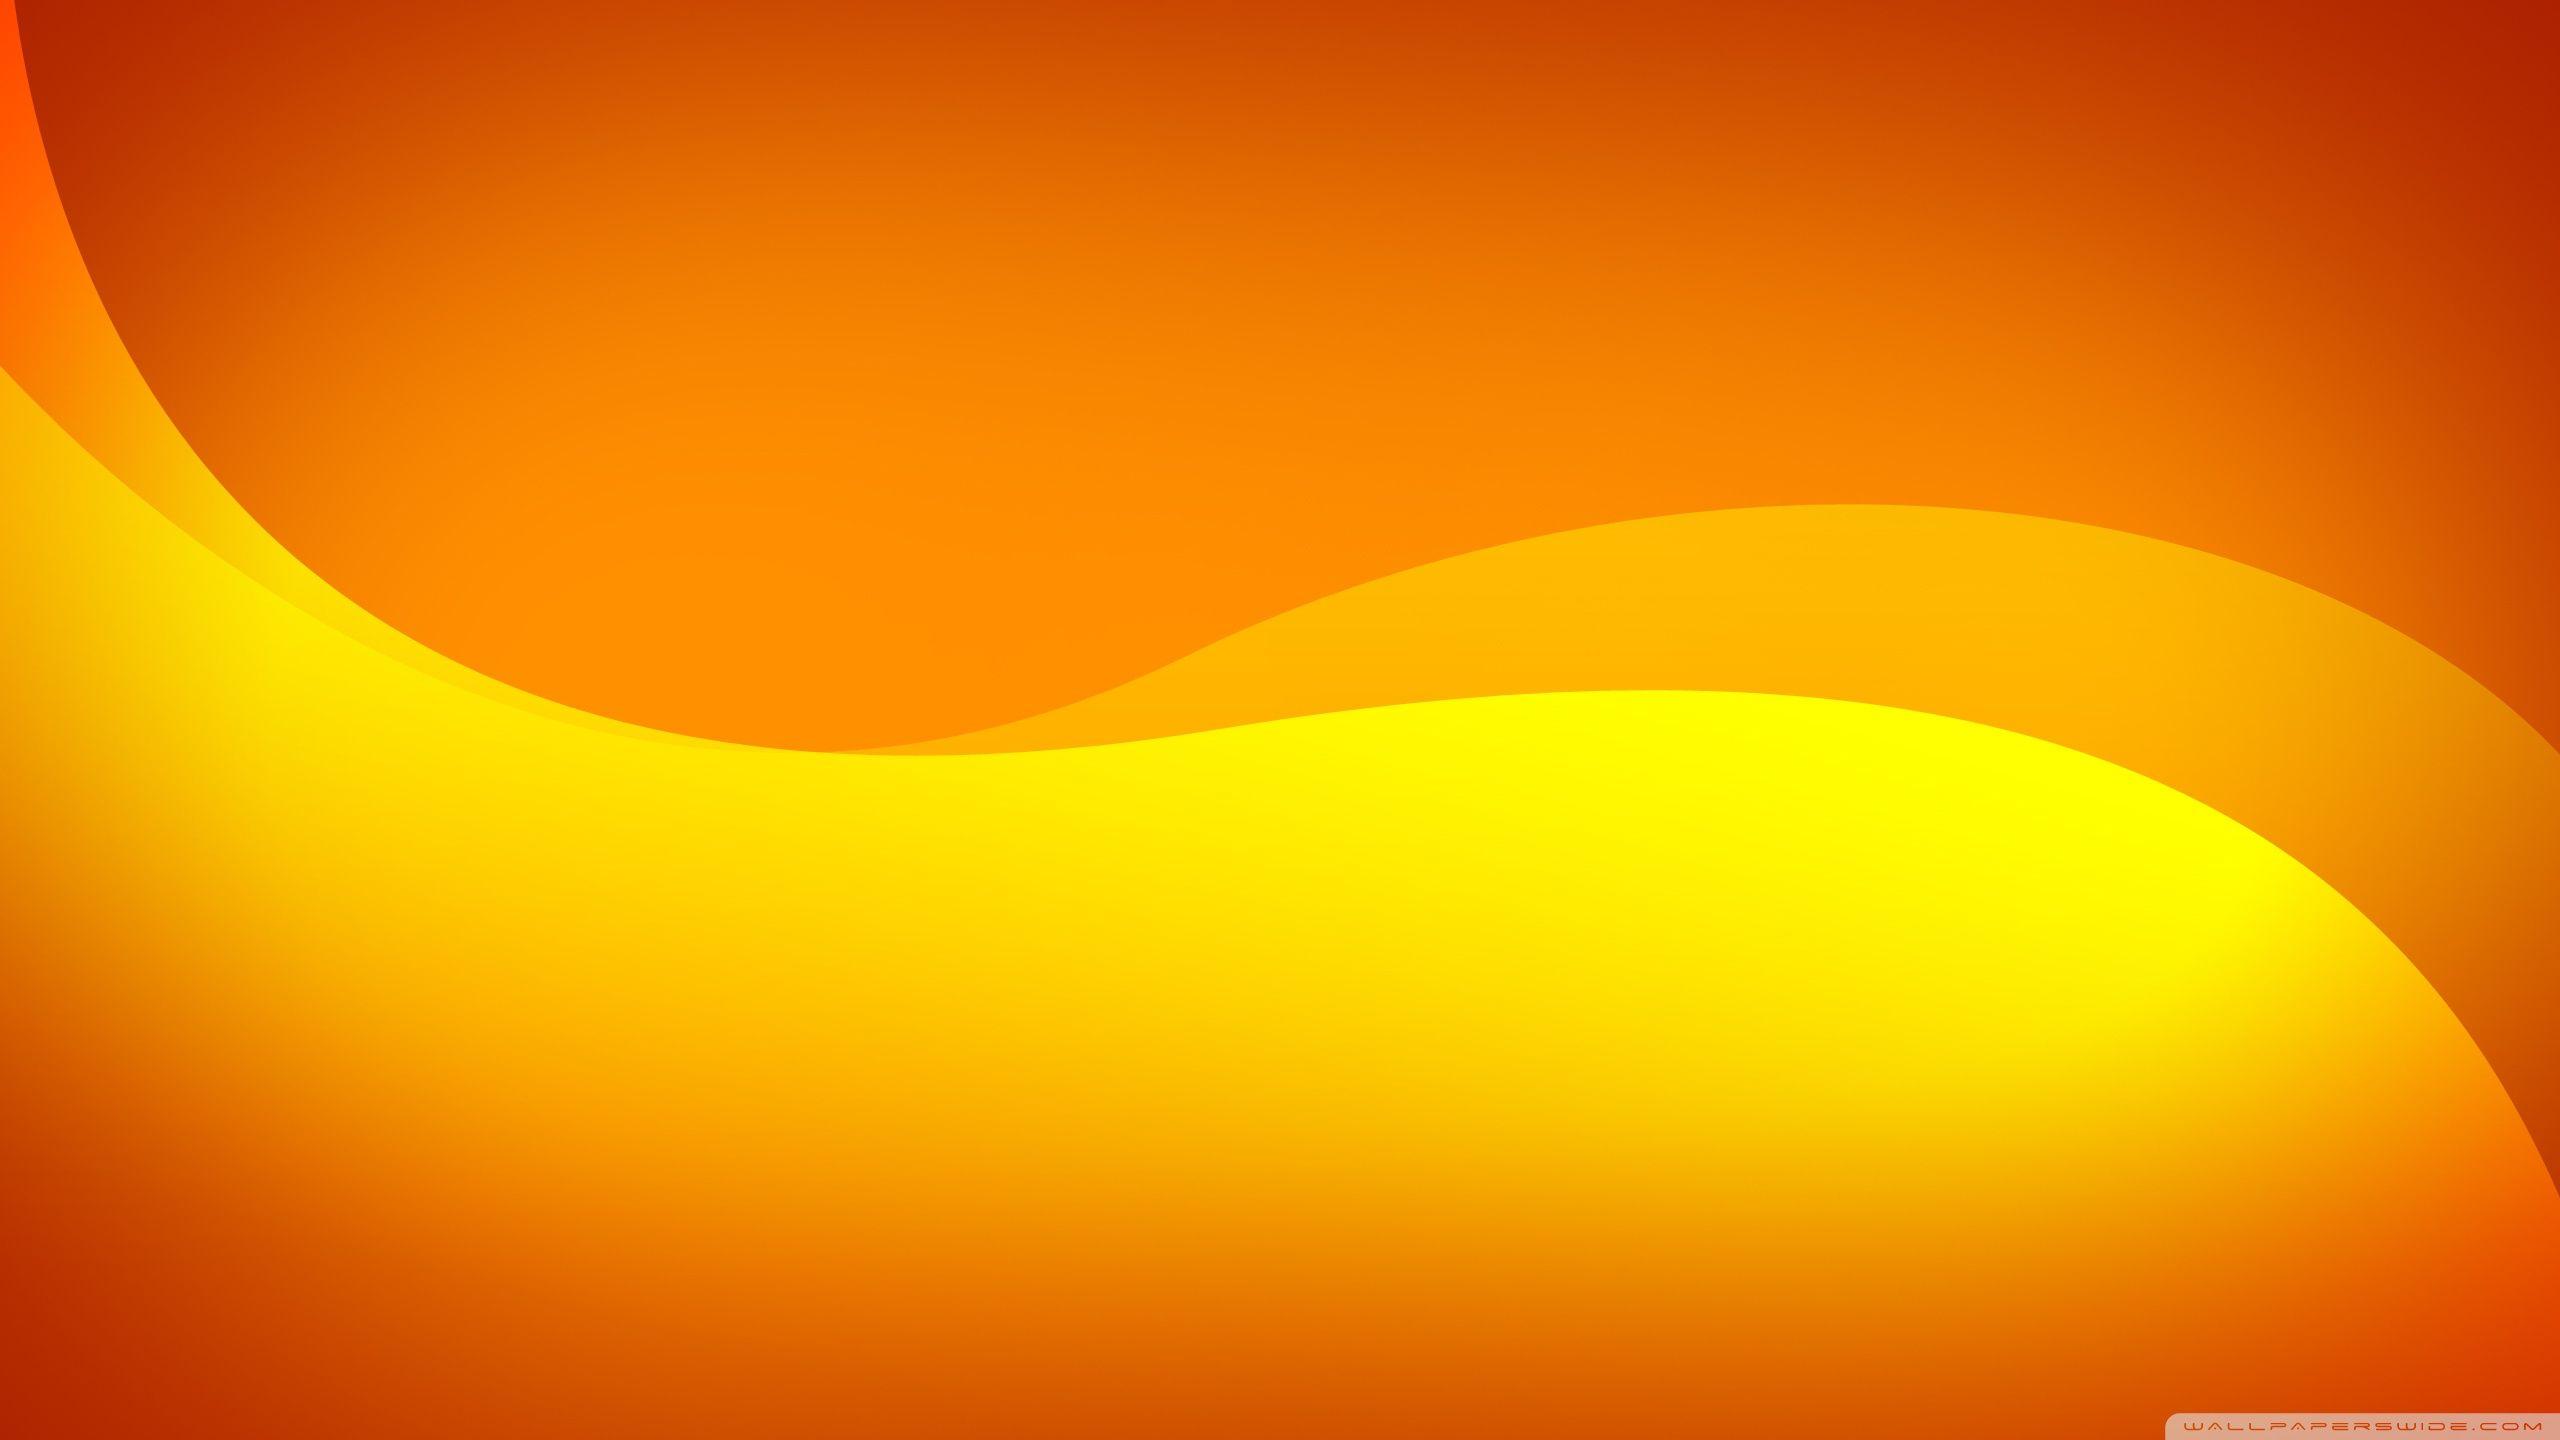 Bạn sẽ bị cuốn hút bởi màu cam tươi tắn và rực rỡ trong hình nền này. Được thiết kế để khiến bạn cảm thấy lạc quan và tự tin, hình ảnh này sẽ giúp cho mỗi ngày của bạn trở nên nhiều hơn một chút vui vẻ.